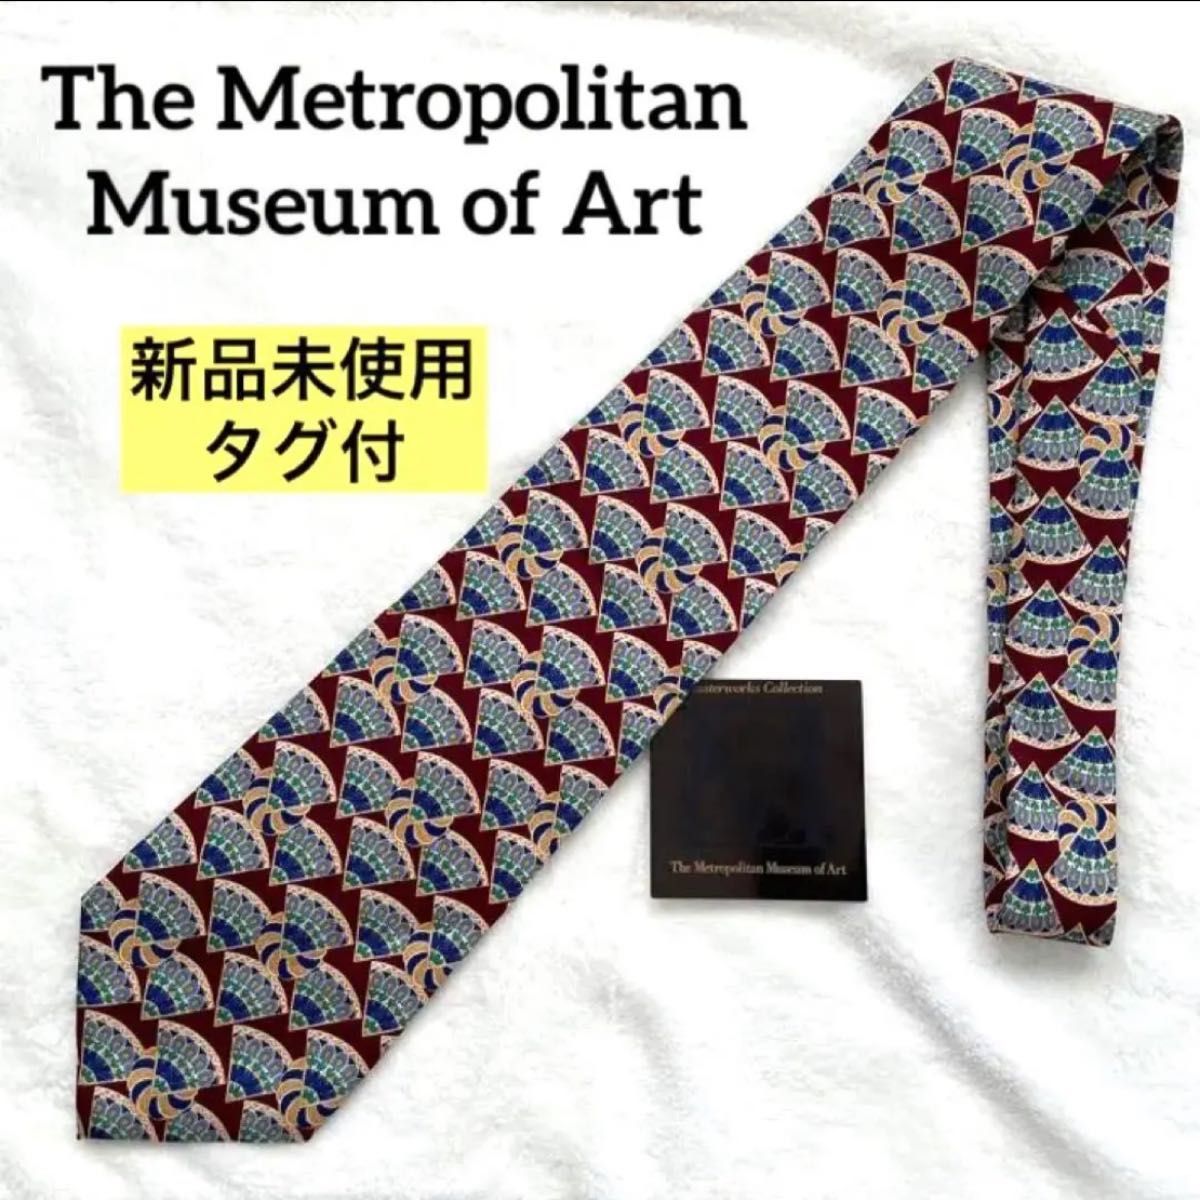 The Metropolitan Museum of Art  ネクタイ 総柄